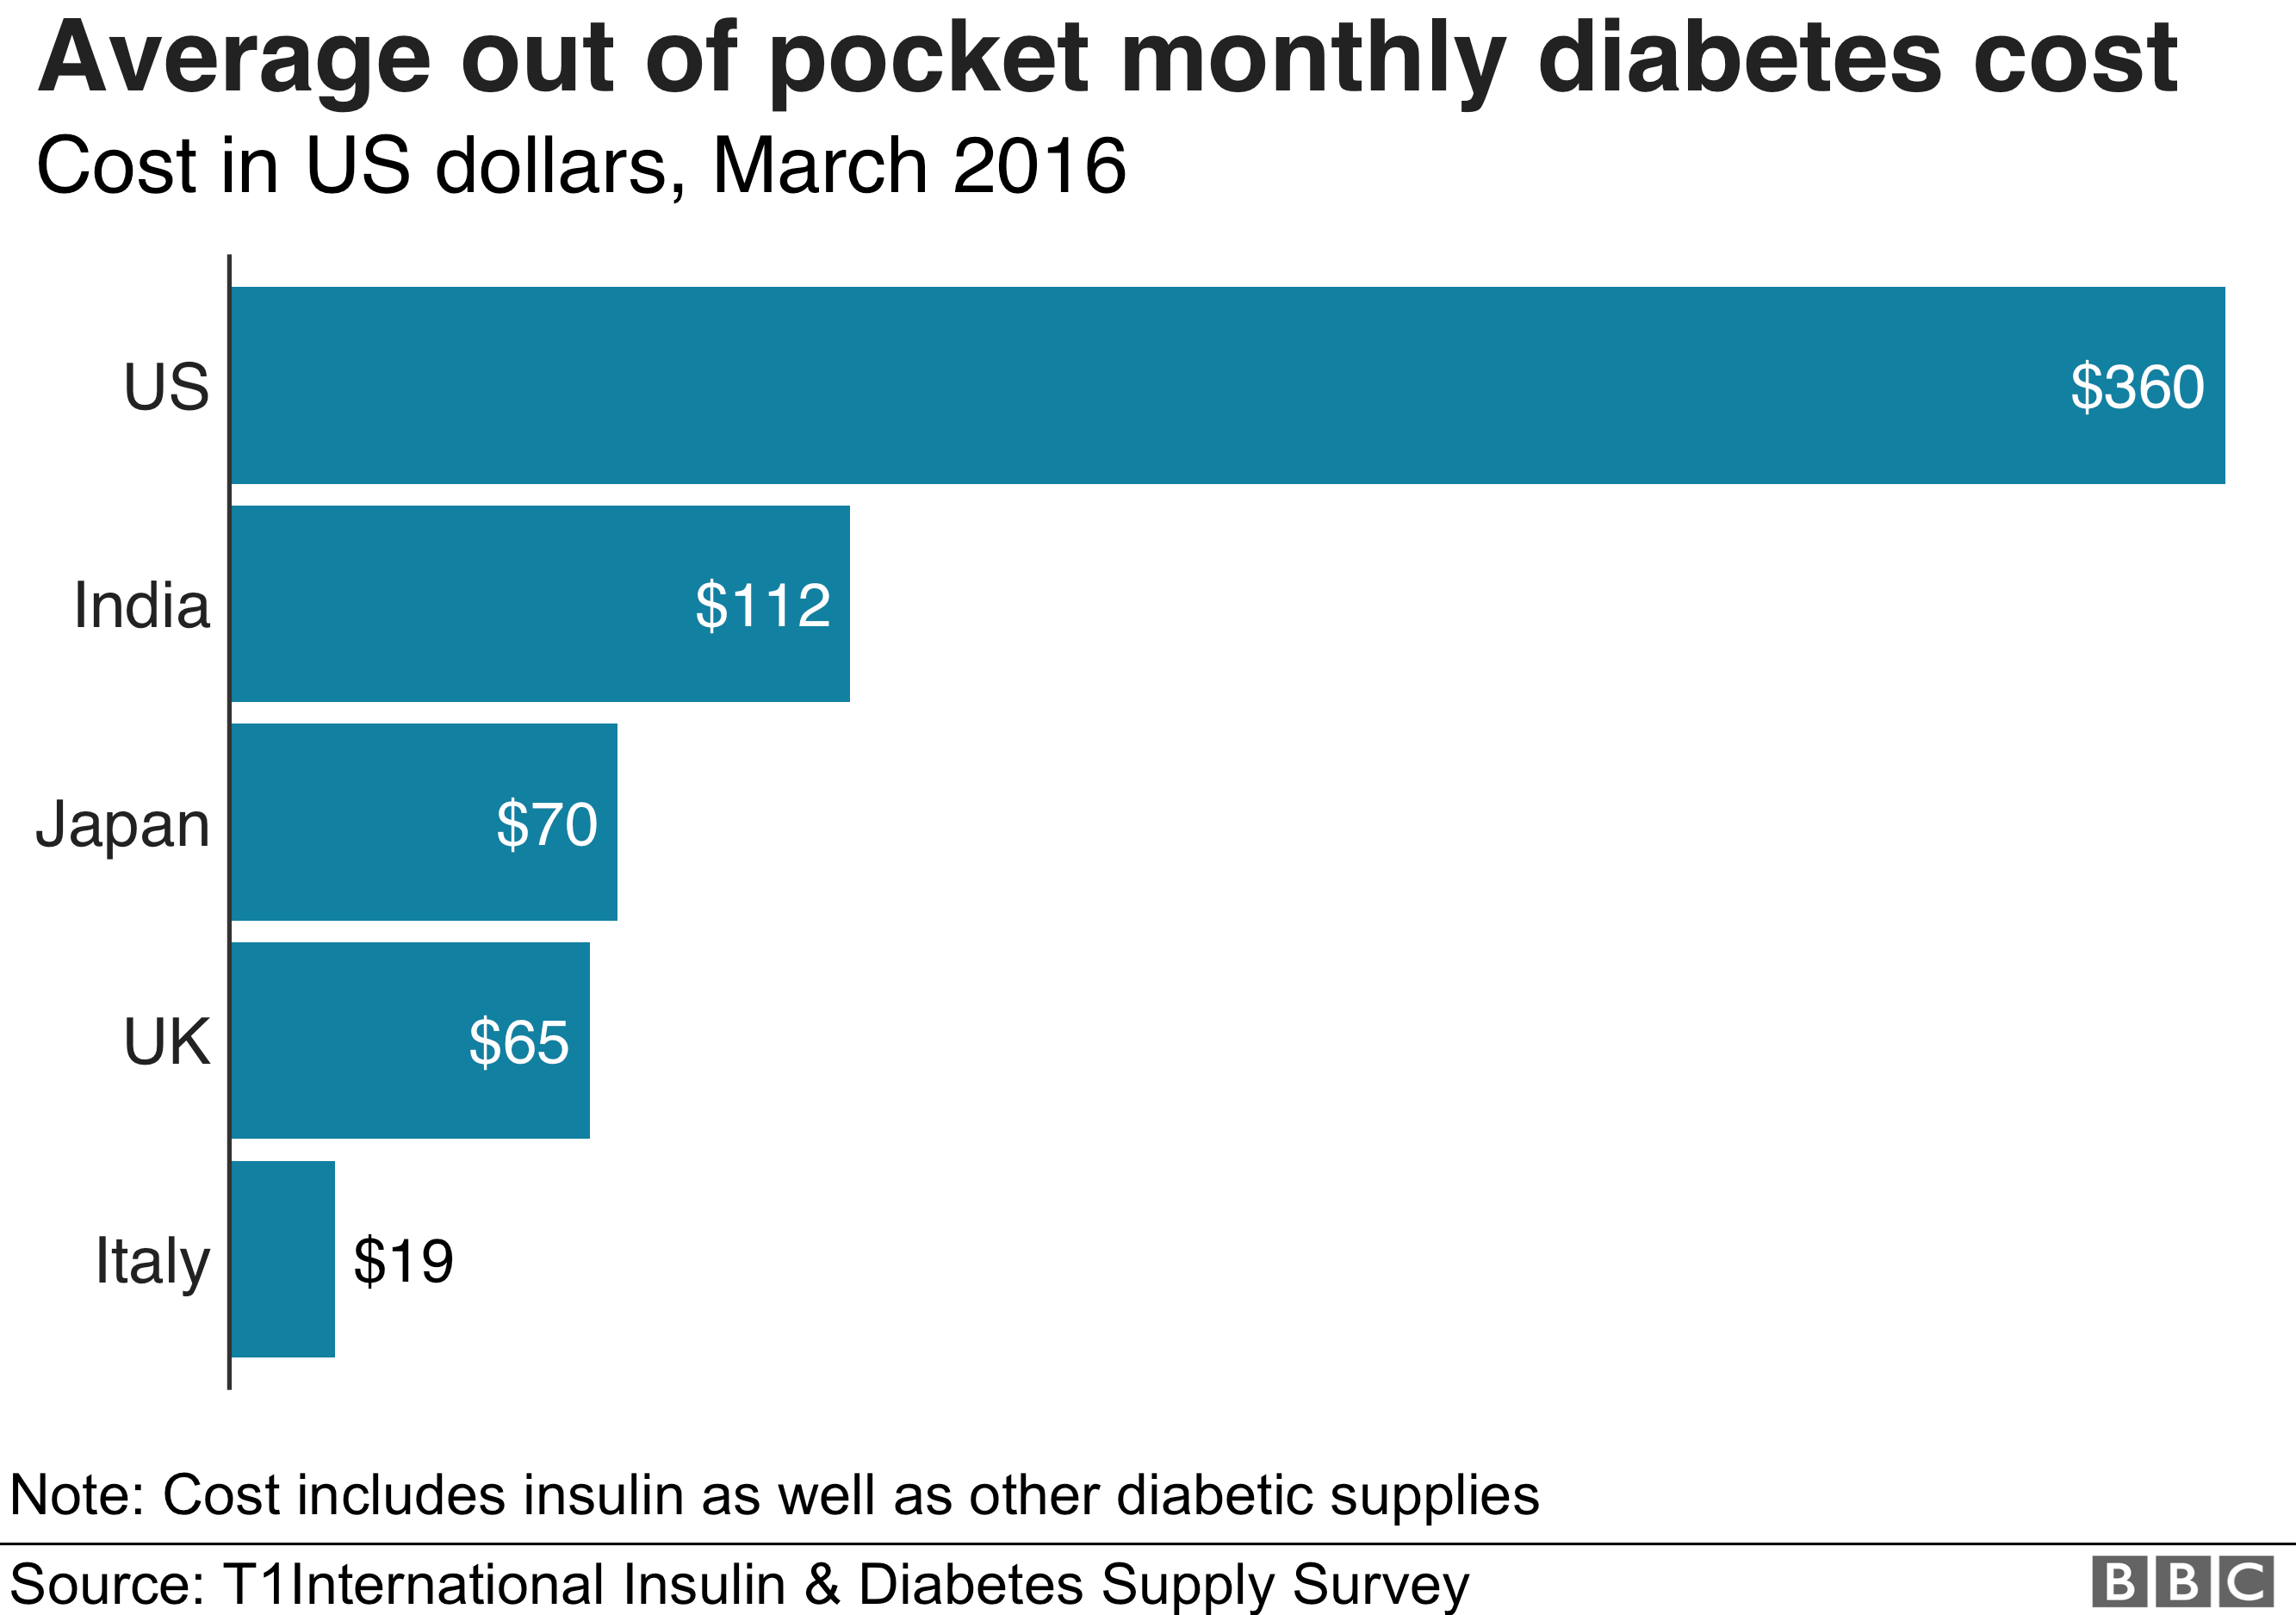 График, показывающий среднюю стоимость диабетического (инсулина и других препаратов) в месяц в Италии (19 долларов), Великобритании (65 долларов), Японии (70 долларов), Индии (112 долларов) и США (360 долларов)